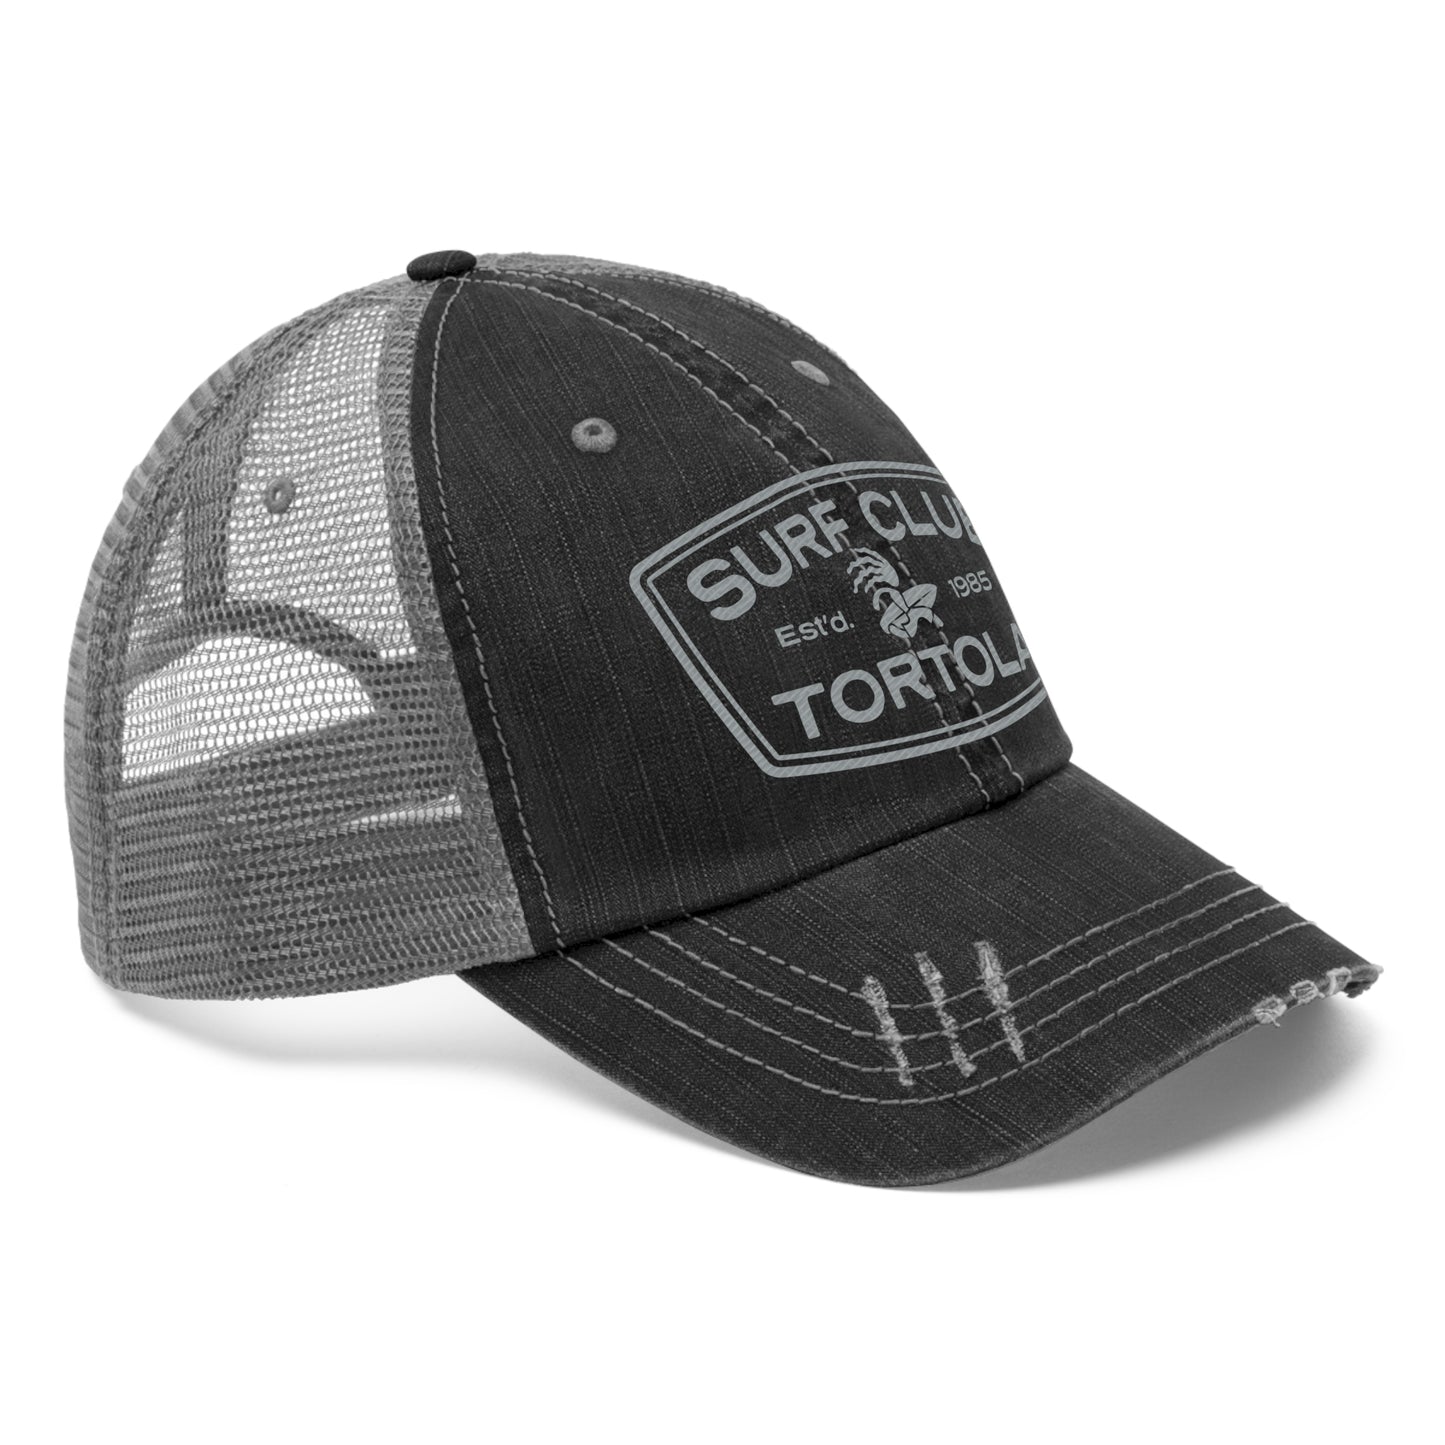 "Surf Club Tortola" Unisex Trucker Hat (Embroidered)